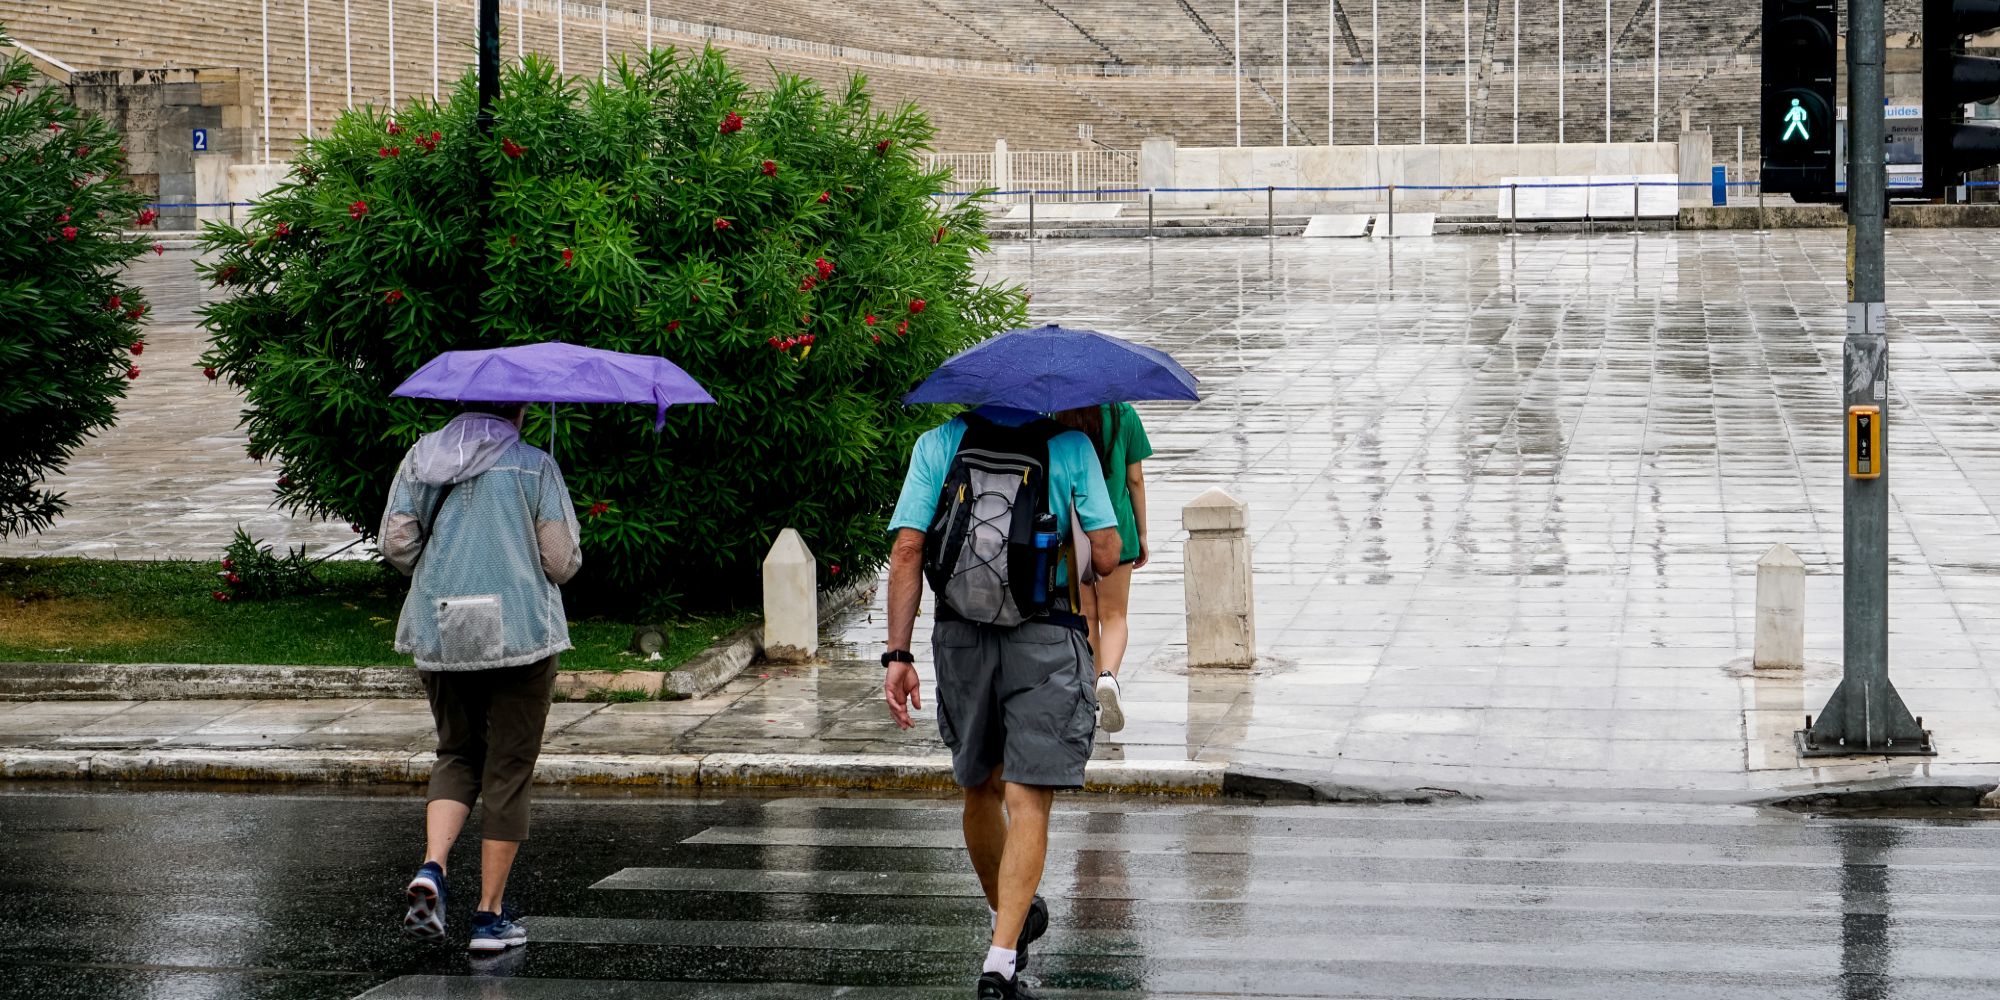 Πολίτες αντιμετωπίζουν την κακοκαιρία με ομπρέλες